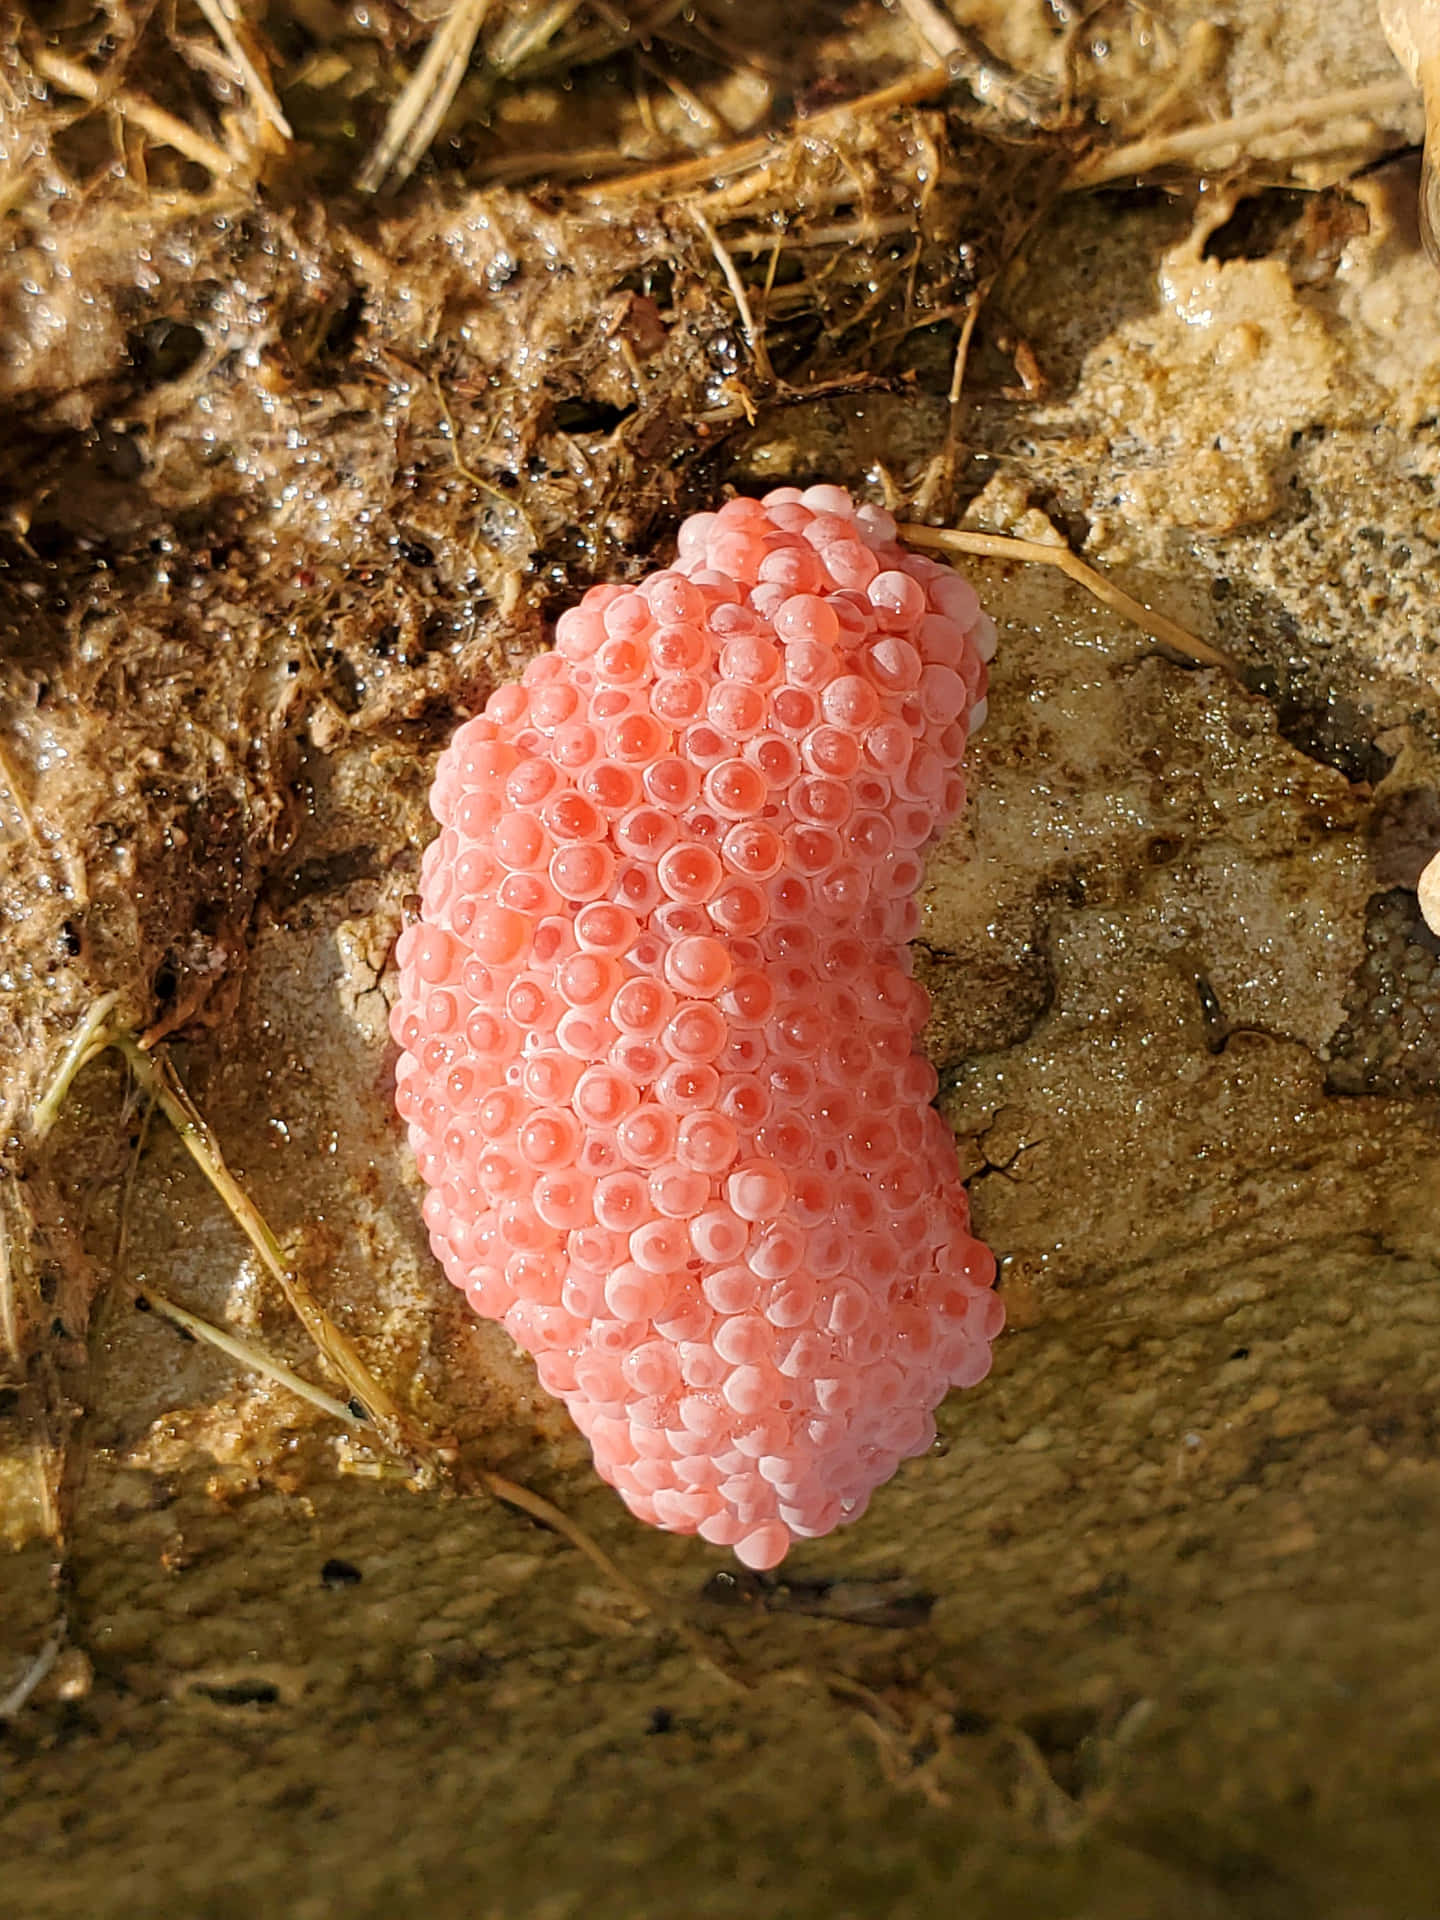 A vibrant pink snail exploring its natural habitat Wallpaper